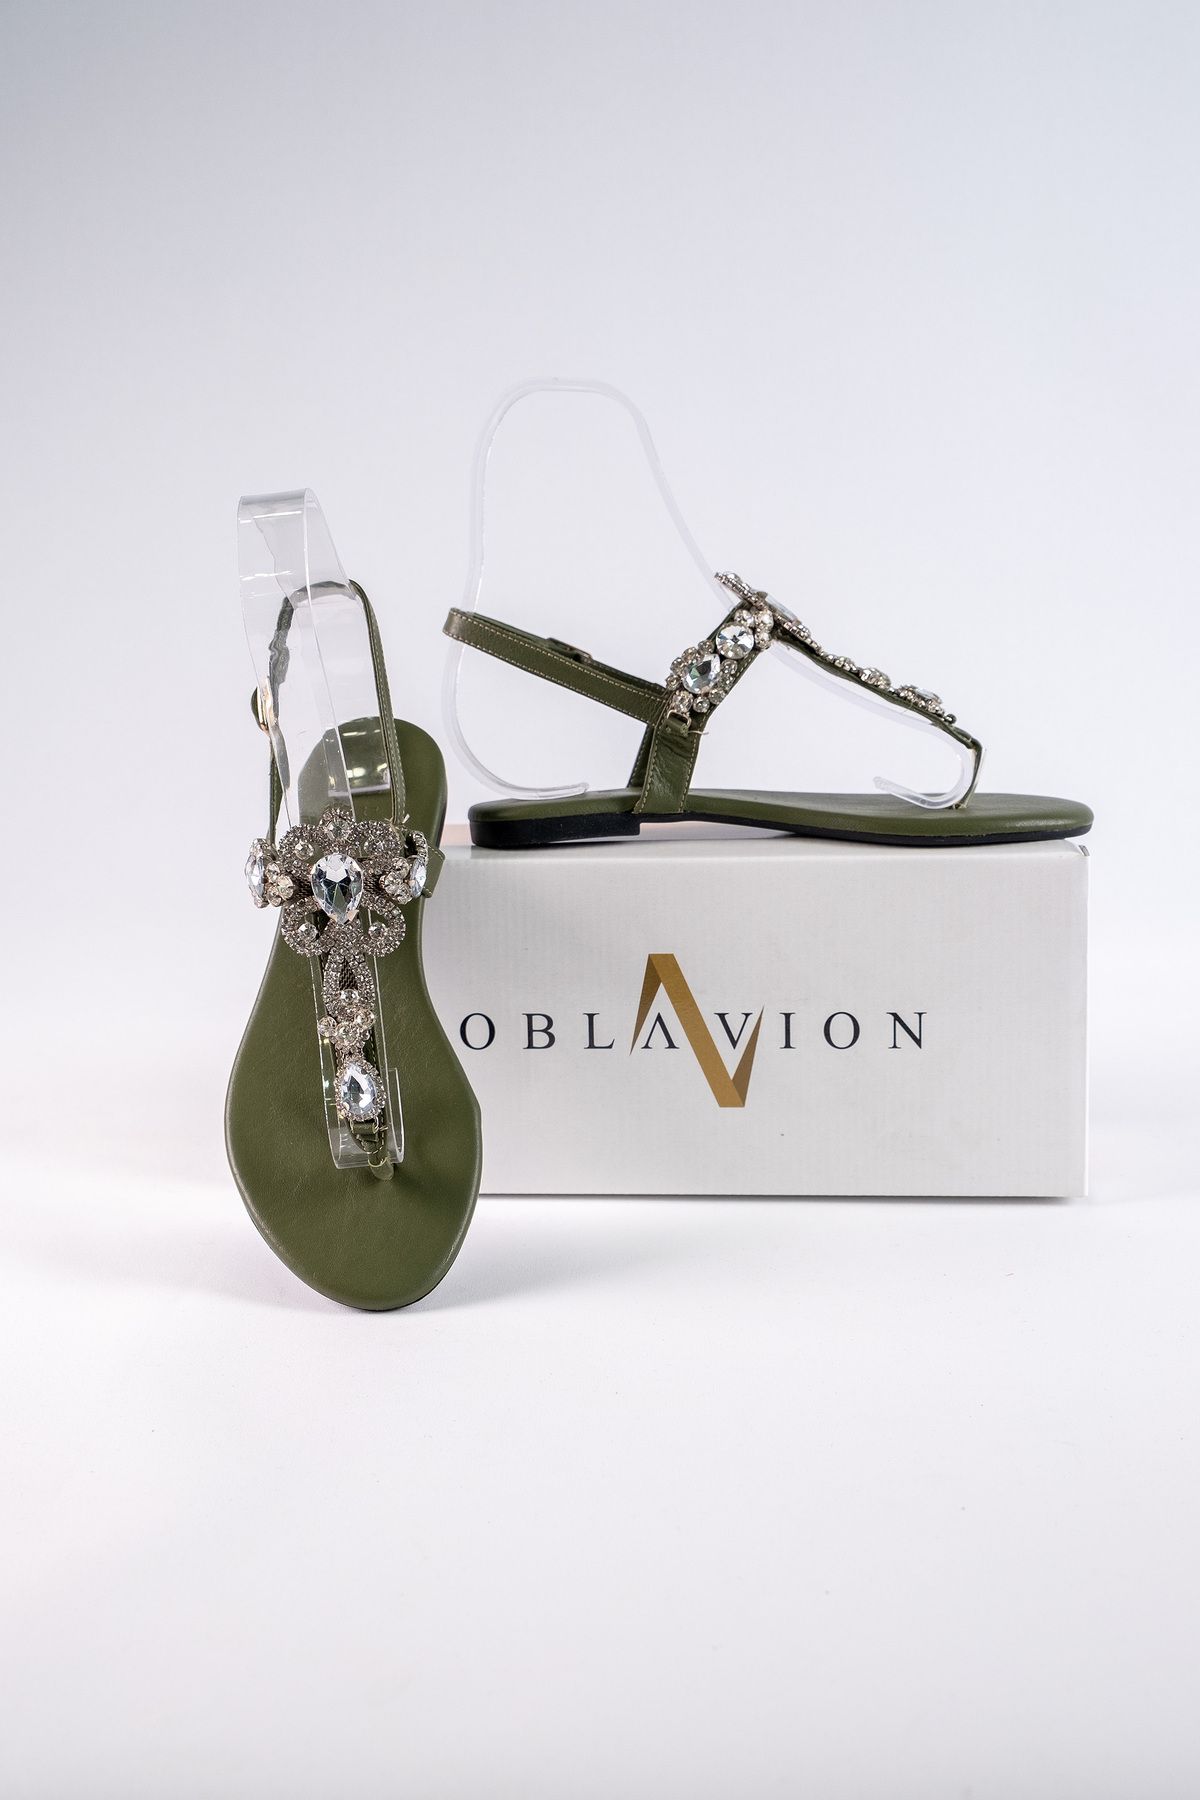 Oblavion Lavion Yeni Sezon Hakiki Deri Hakiyeşil Günlük Taşlı Kadın Sandalet